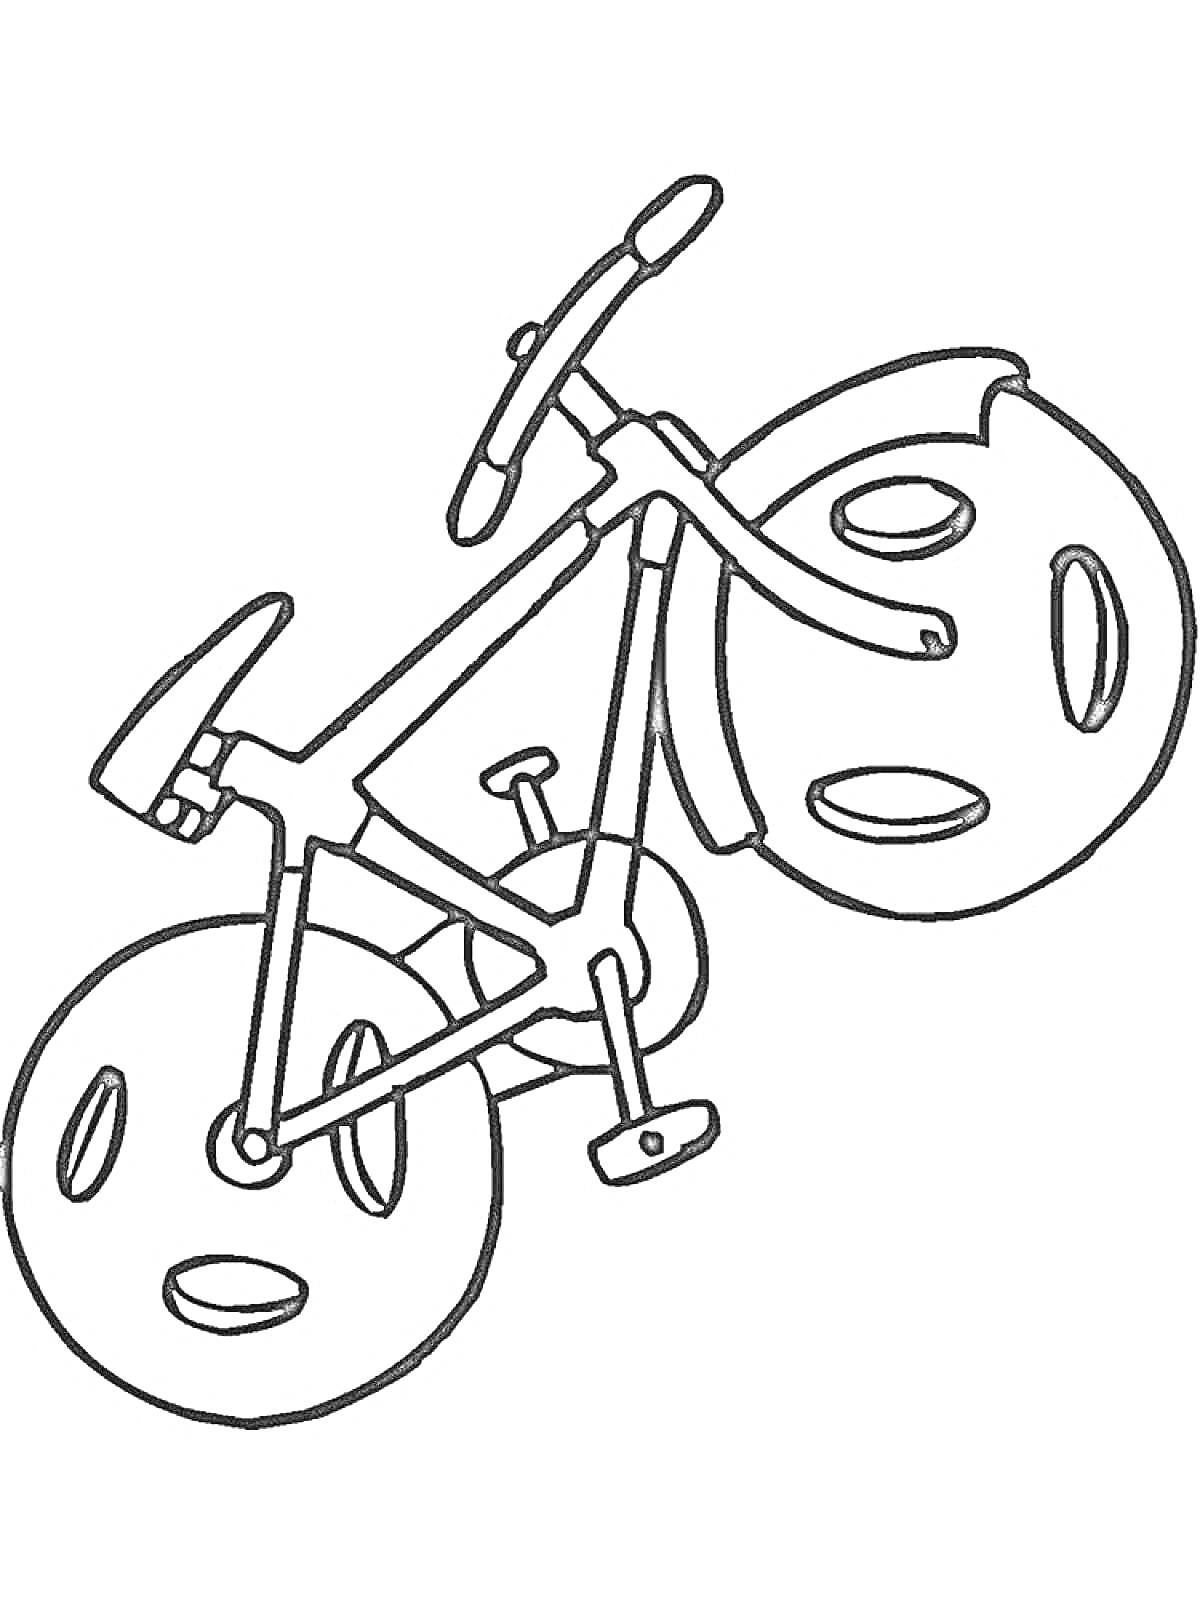 Велосипед с большими колёсами и педалями